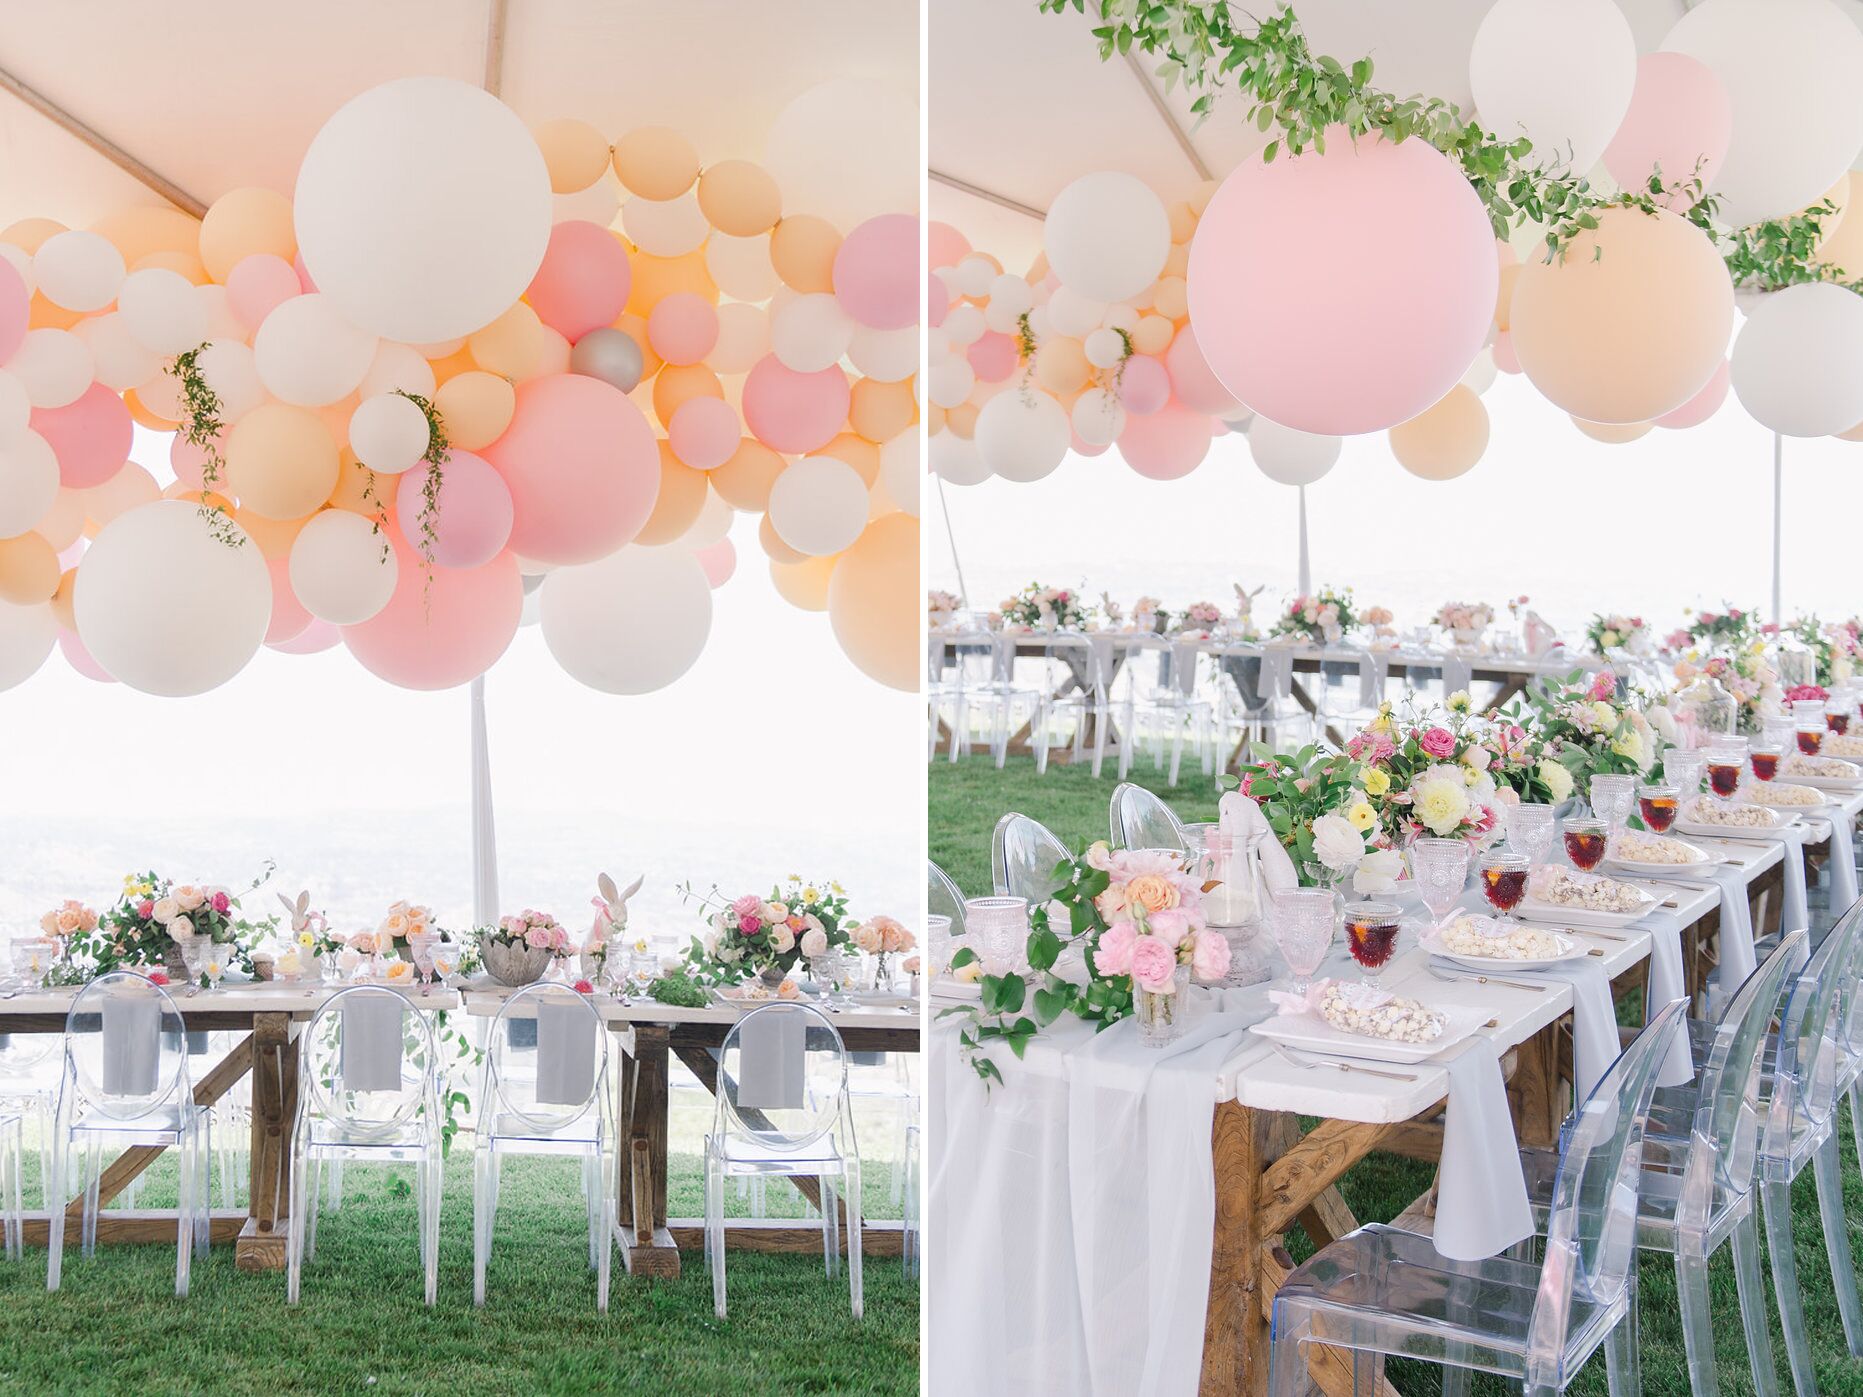 Пастельно-розовая и белая гирлянда из воздушных шаров висит над длинными столами